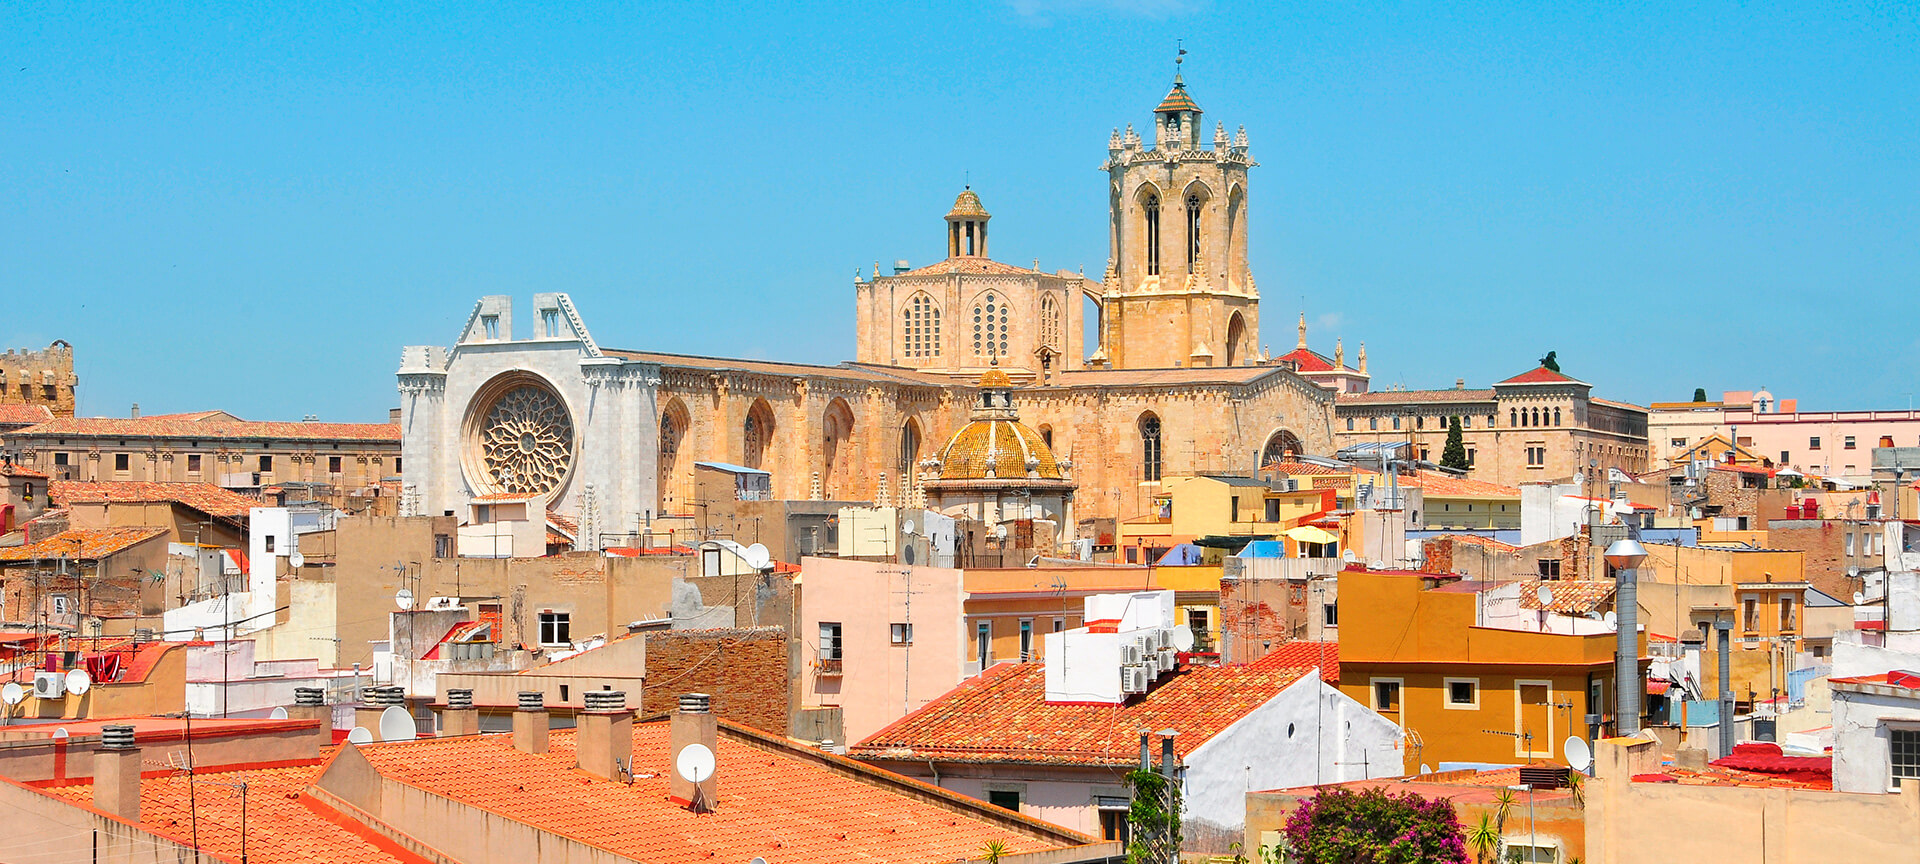 Kleurrijke stad met historische kathedraal onder blauwe hemel.